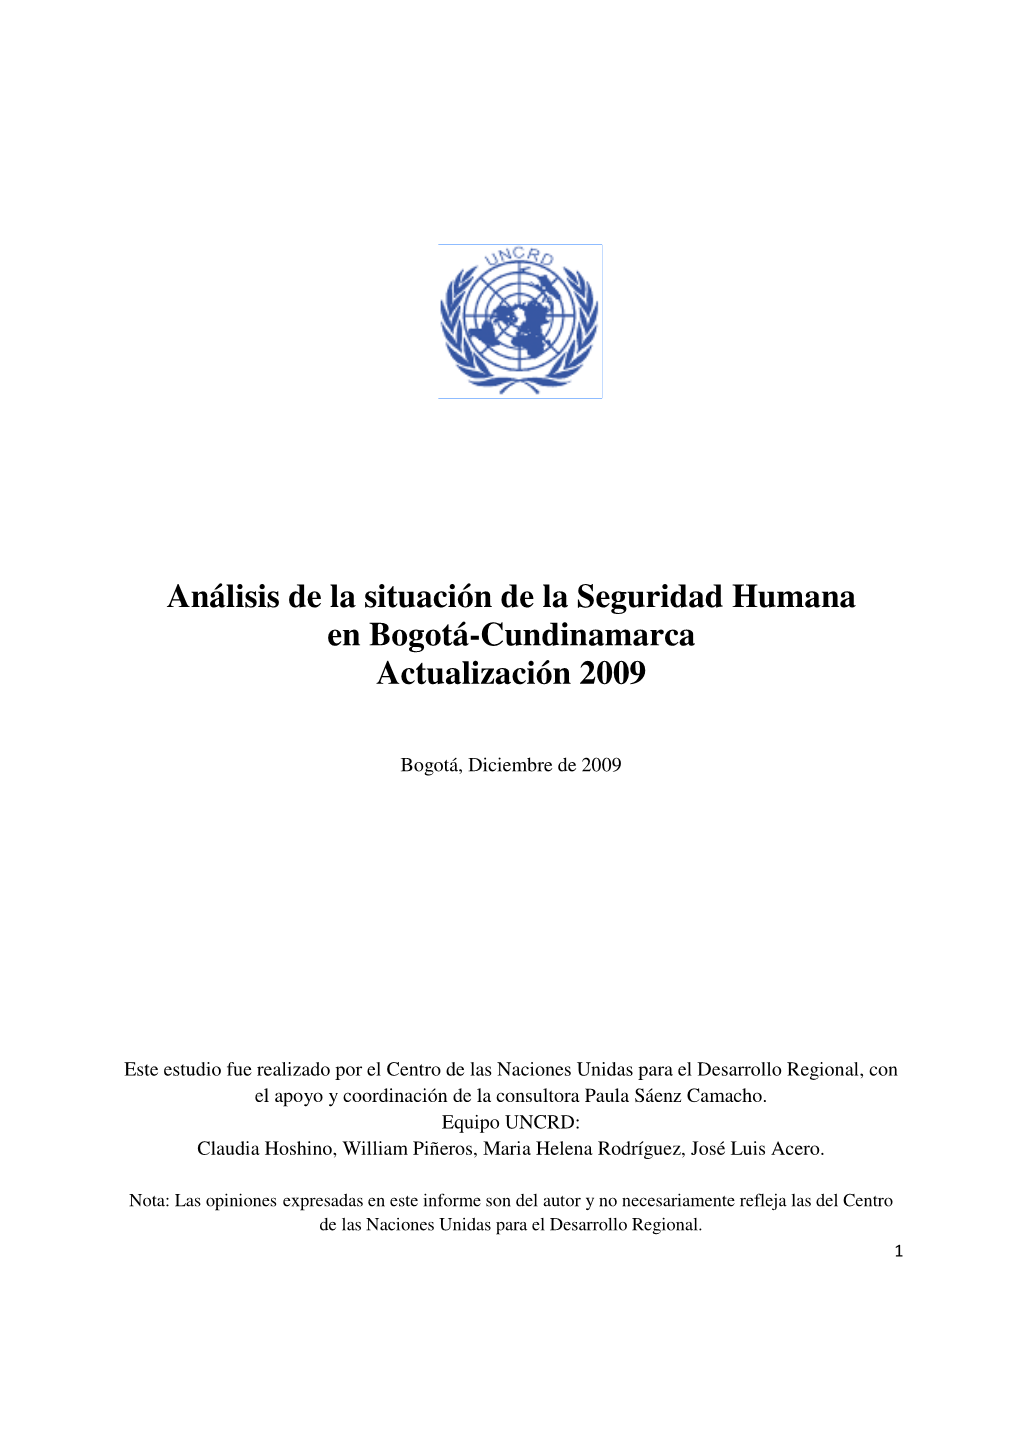 Análisis De La Situación De La Seguridad Humana En Bogotá-Cundinamarca Actualización 2009